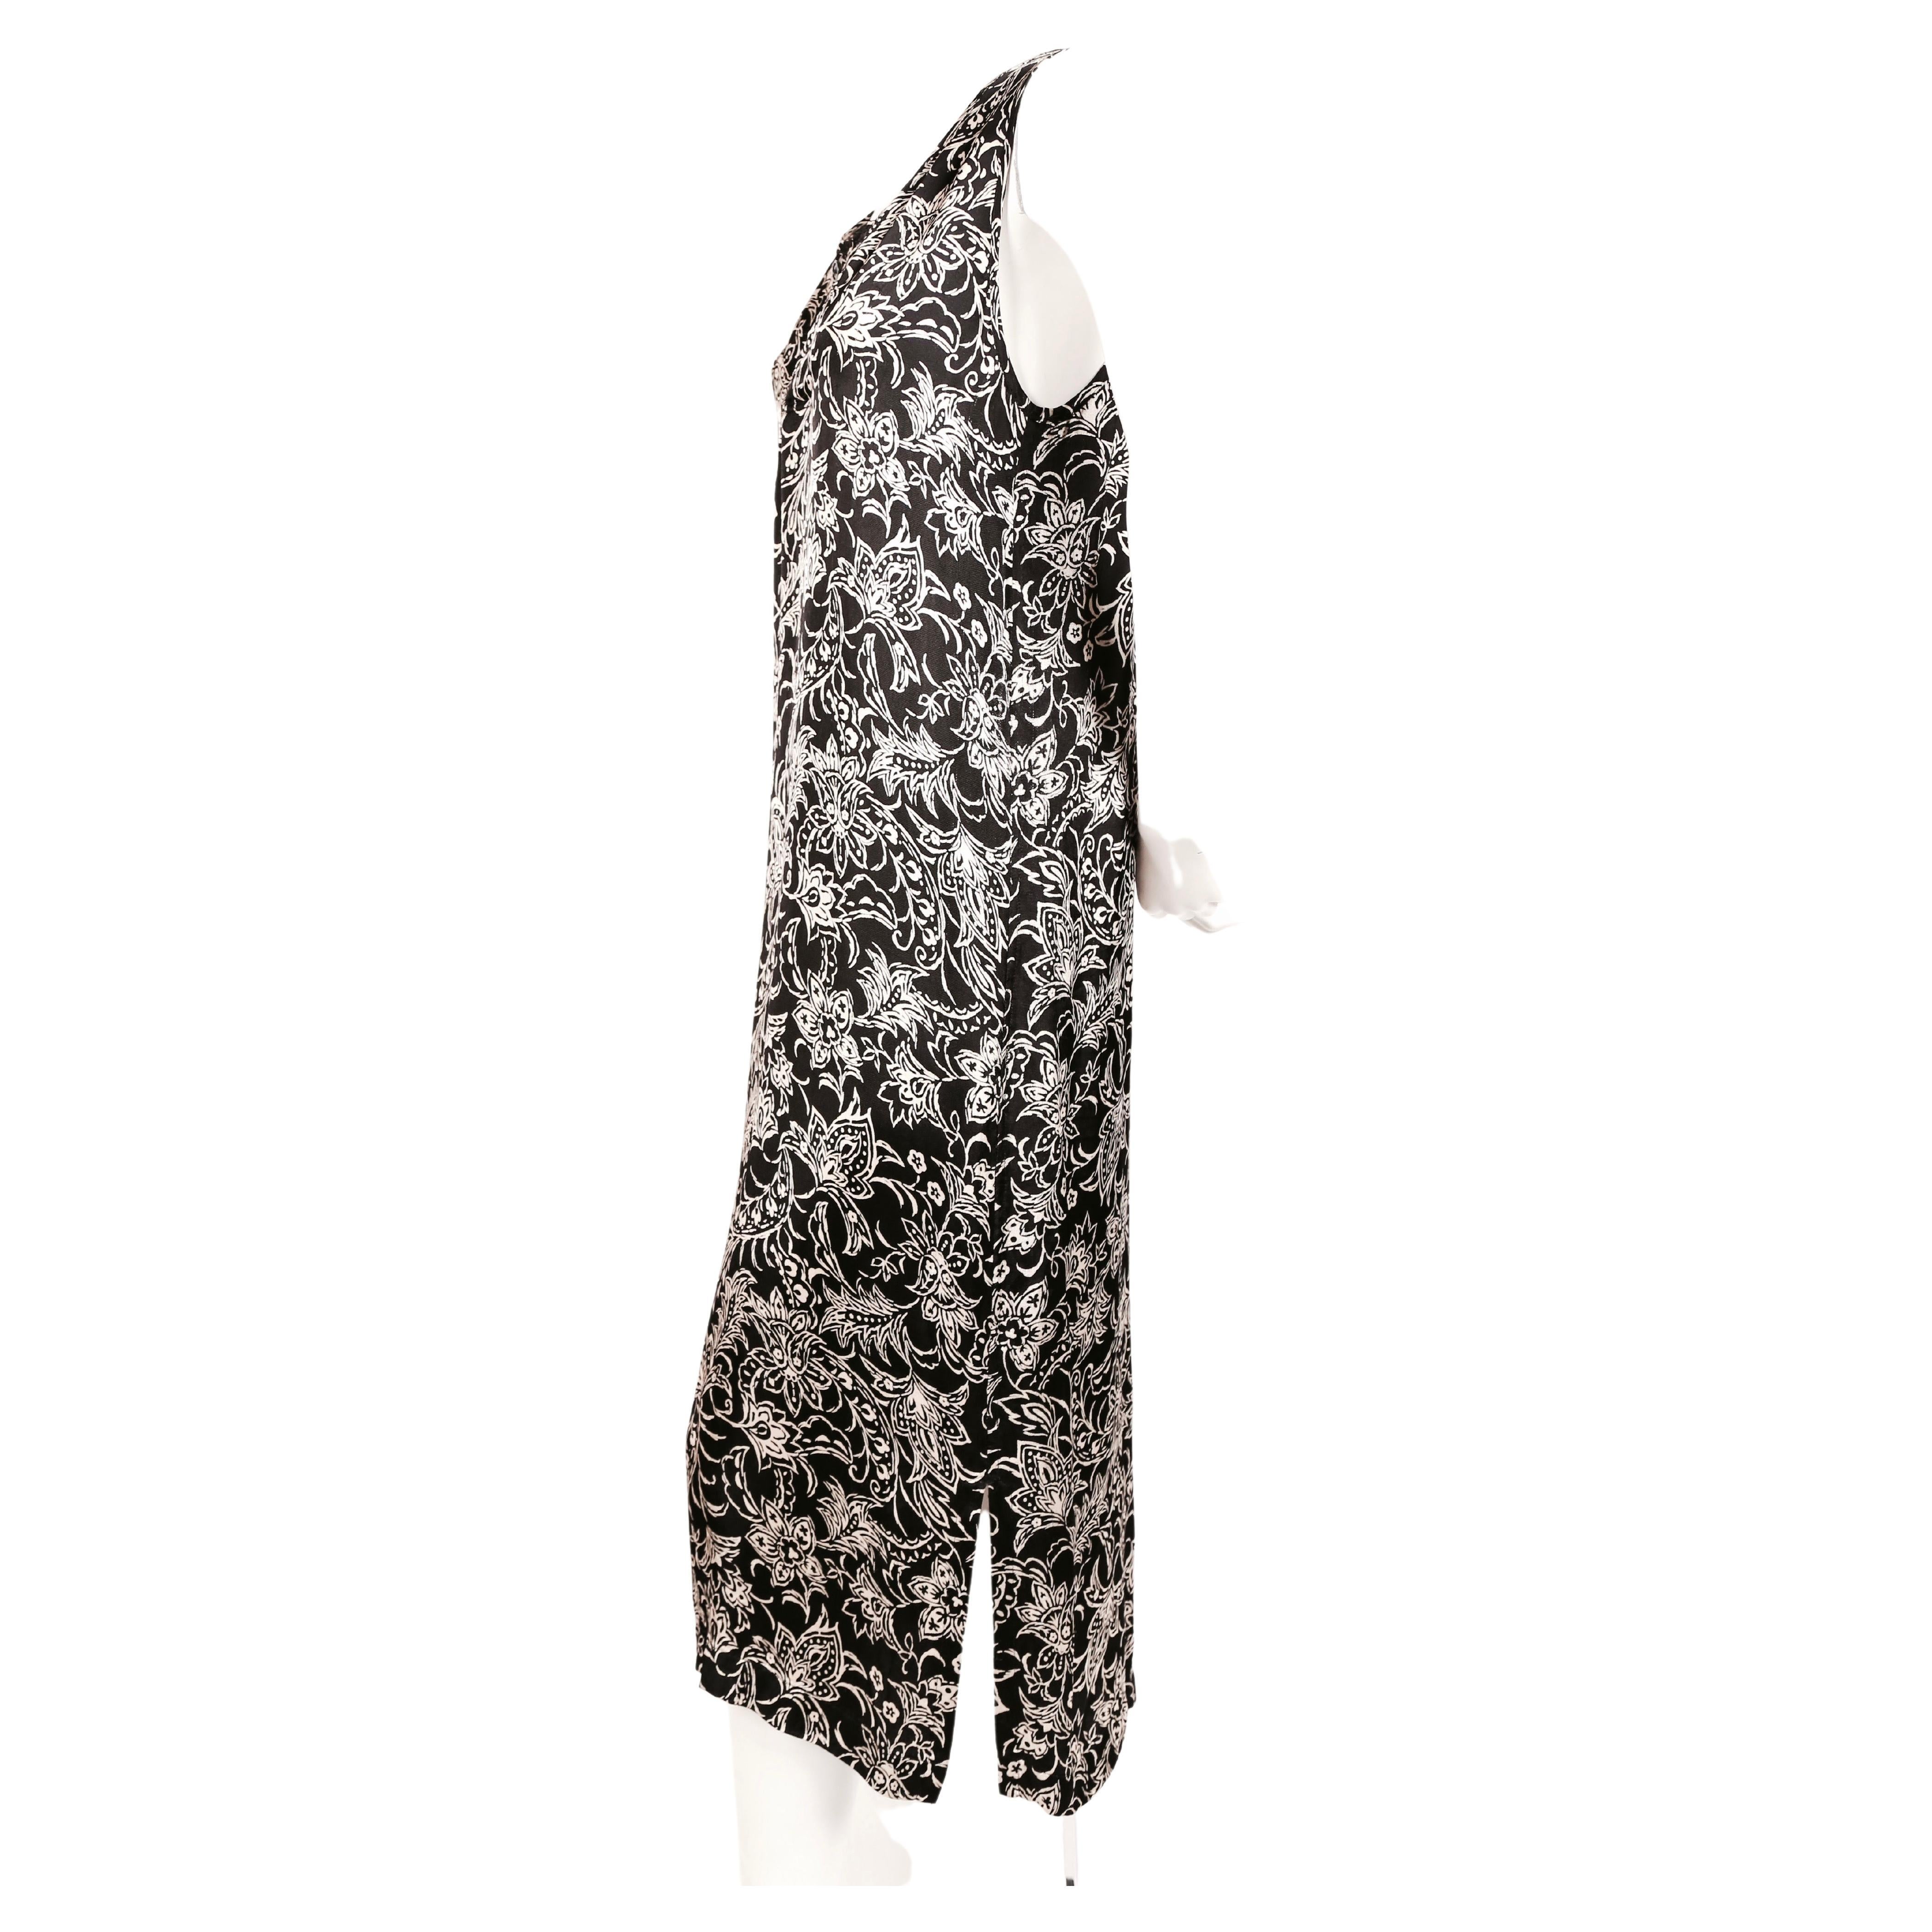 Robe à imprimé abstrait noir et écru avec double fente et encolure boutonnée conçue par Rei Kawakubo pour Comme Des Garcons robe de chambre. Convient parfaitement à une taille S. Mesures approximatives : buste 36